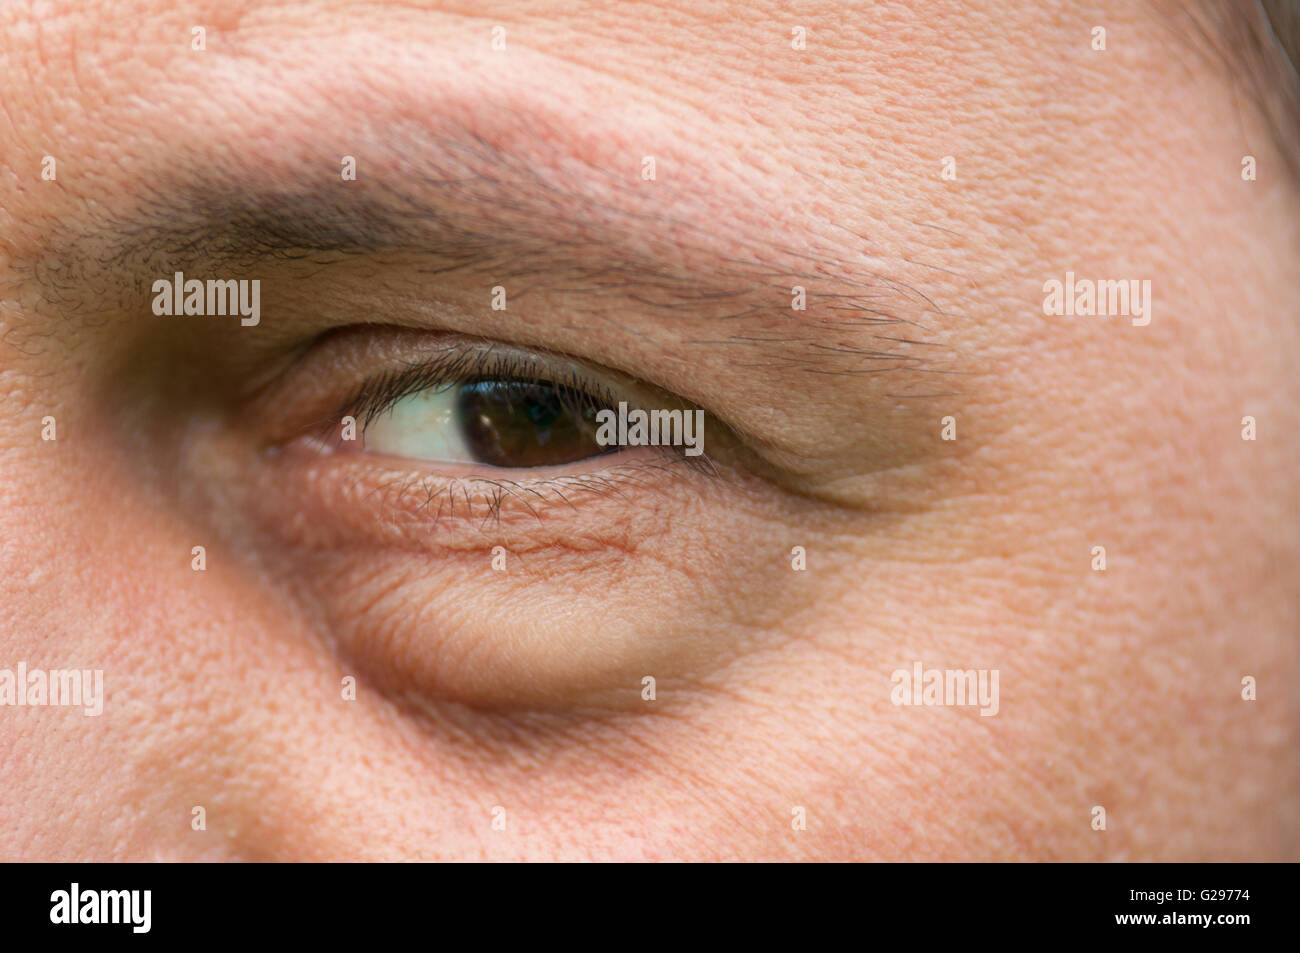 Infiammazione agli occhi immagini e fotografie stock ad alta risoluzione -  Alamy